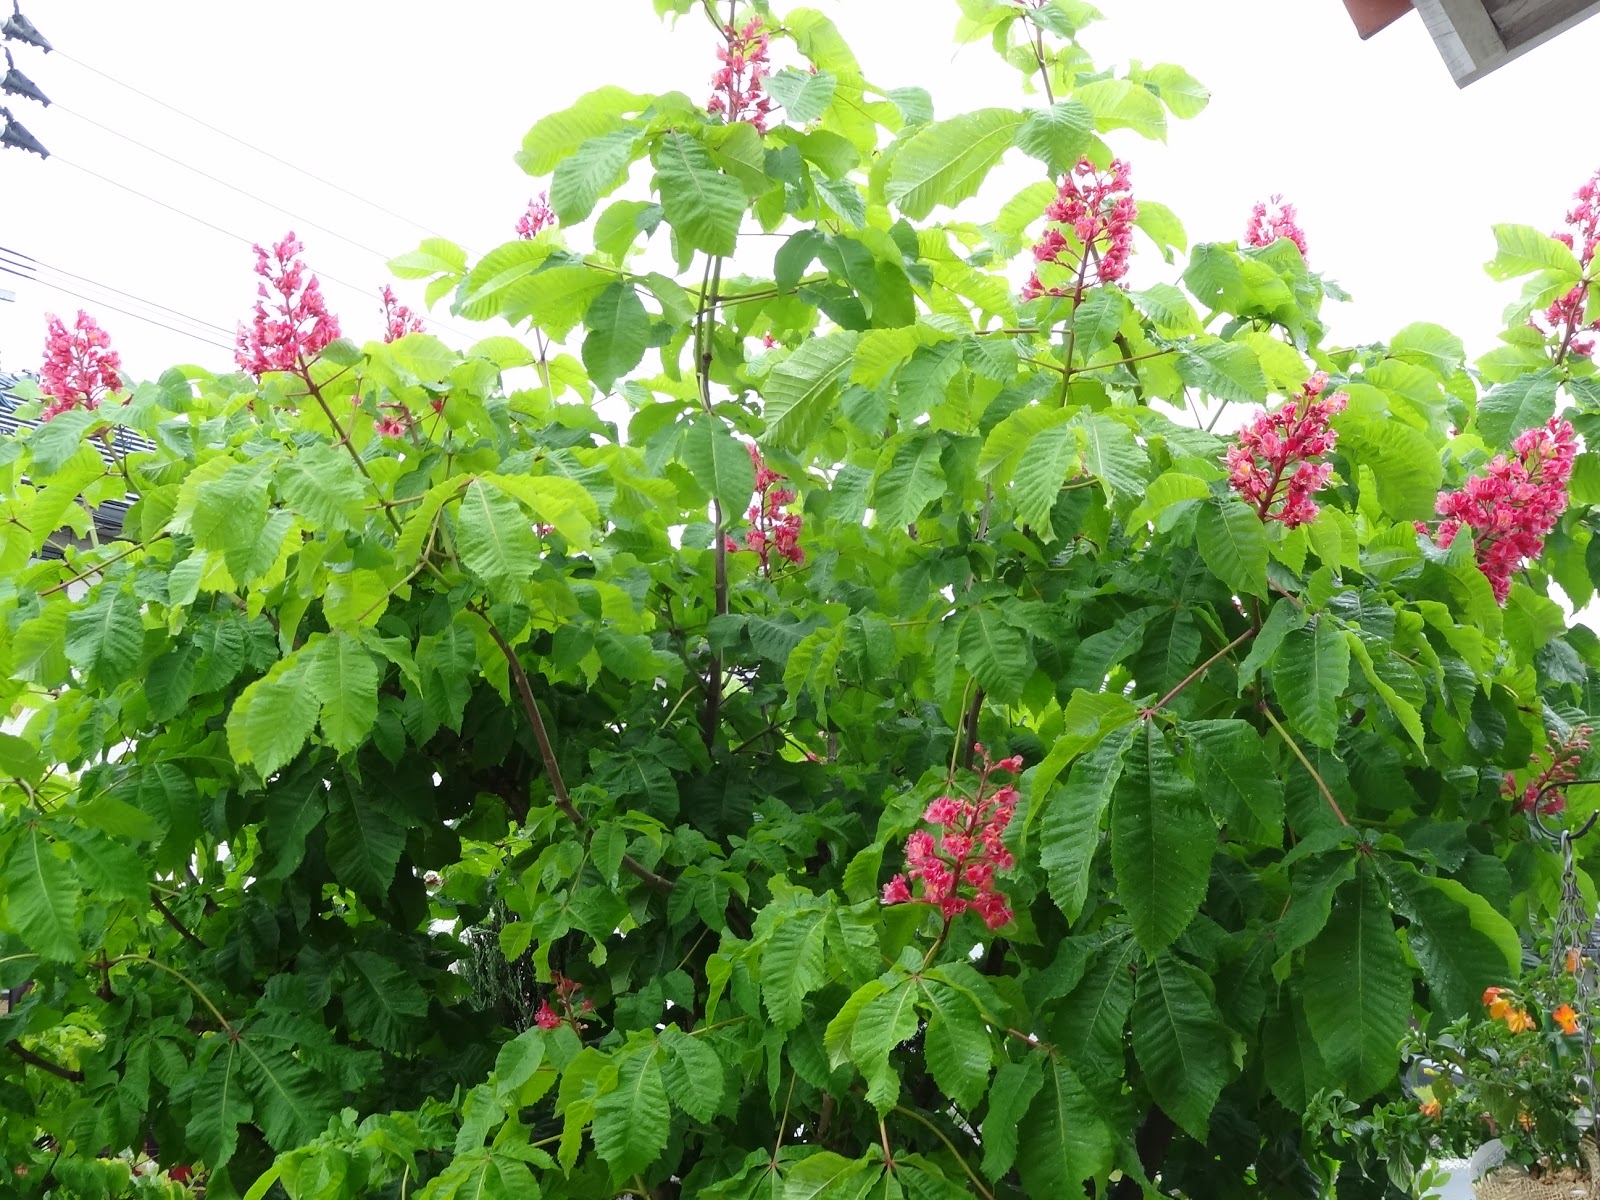 和の花だより マロニエ 優しい色が素敵な紅花栃の木